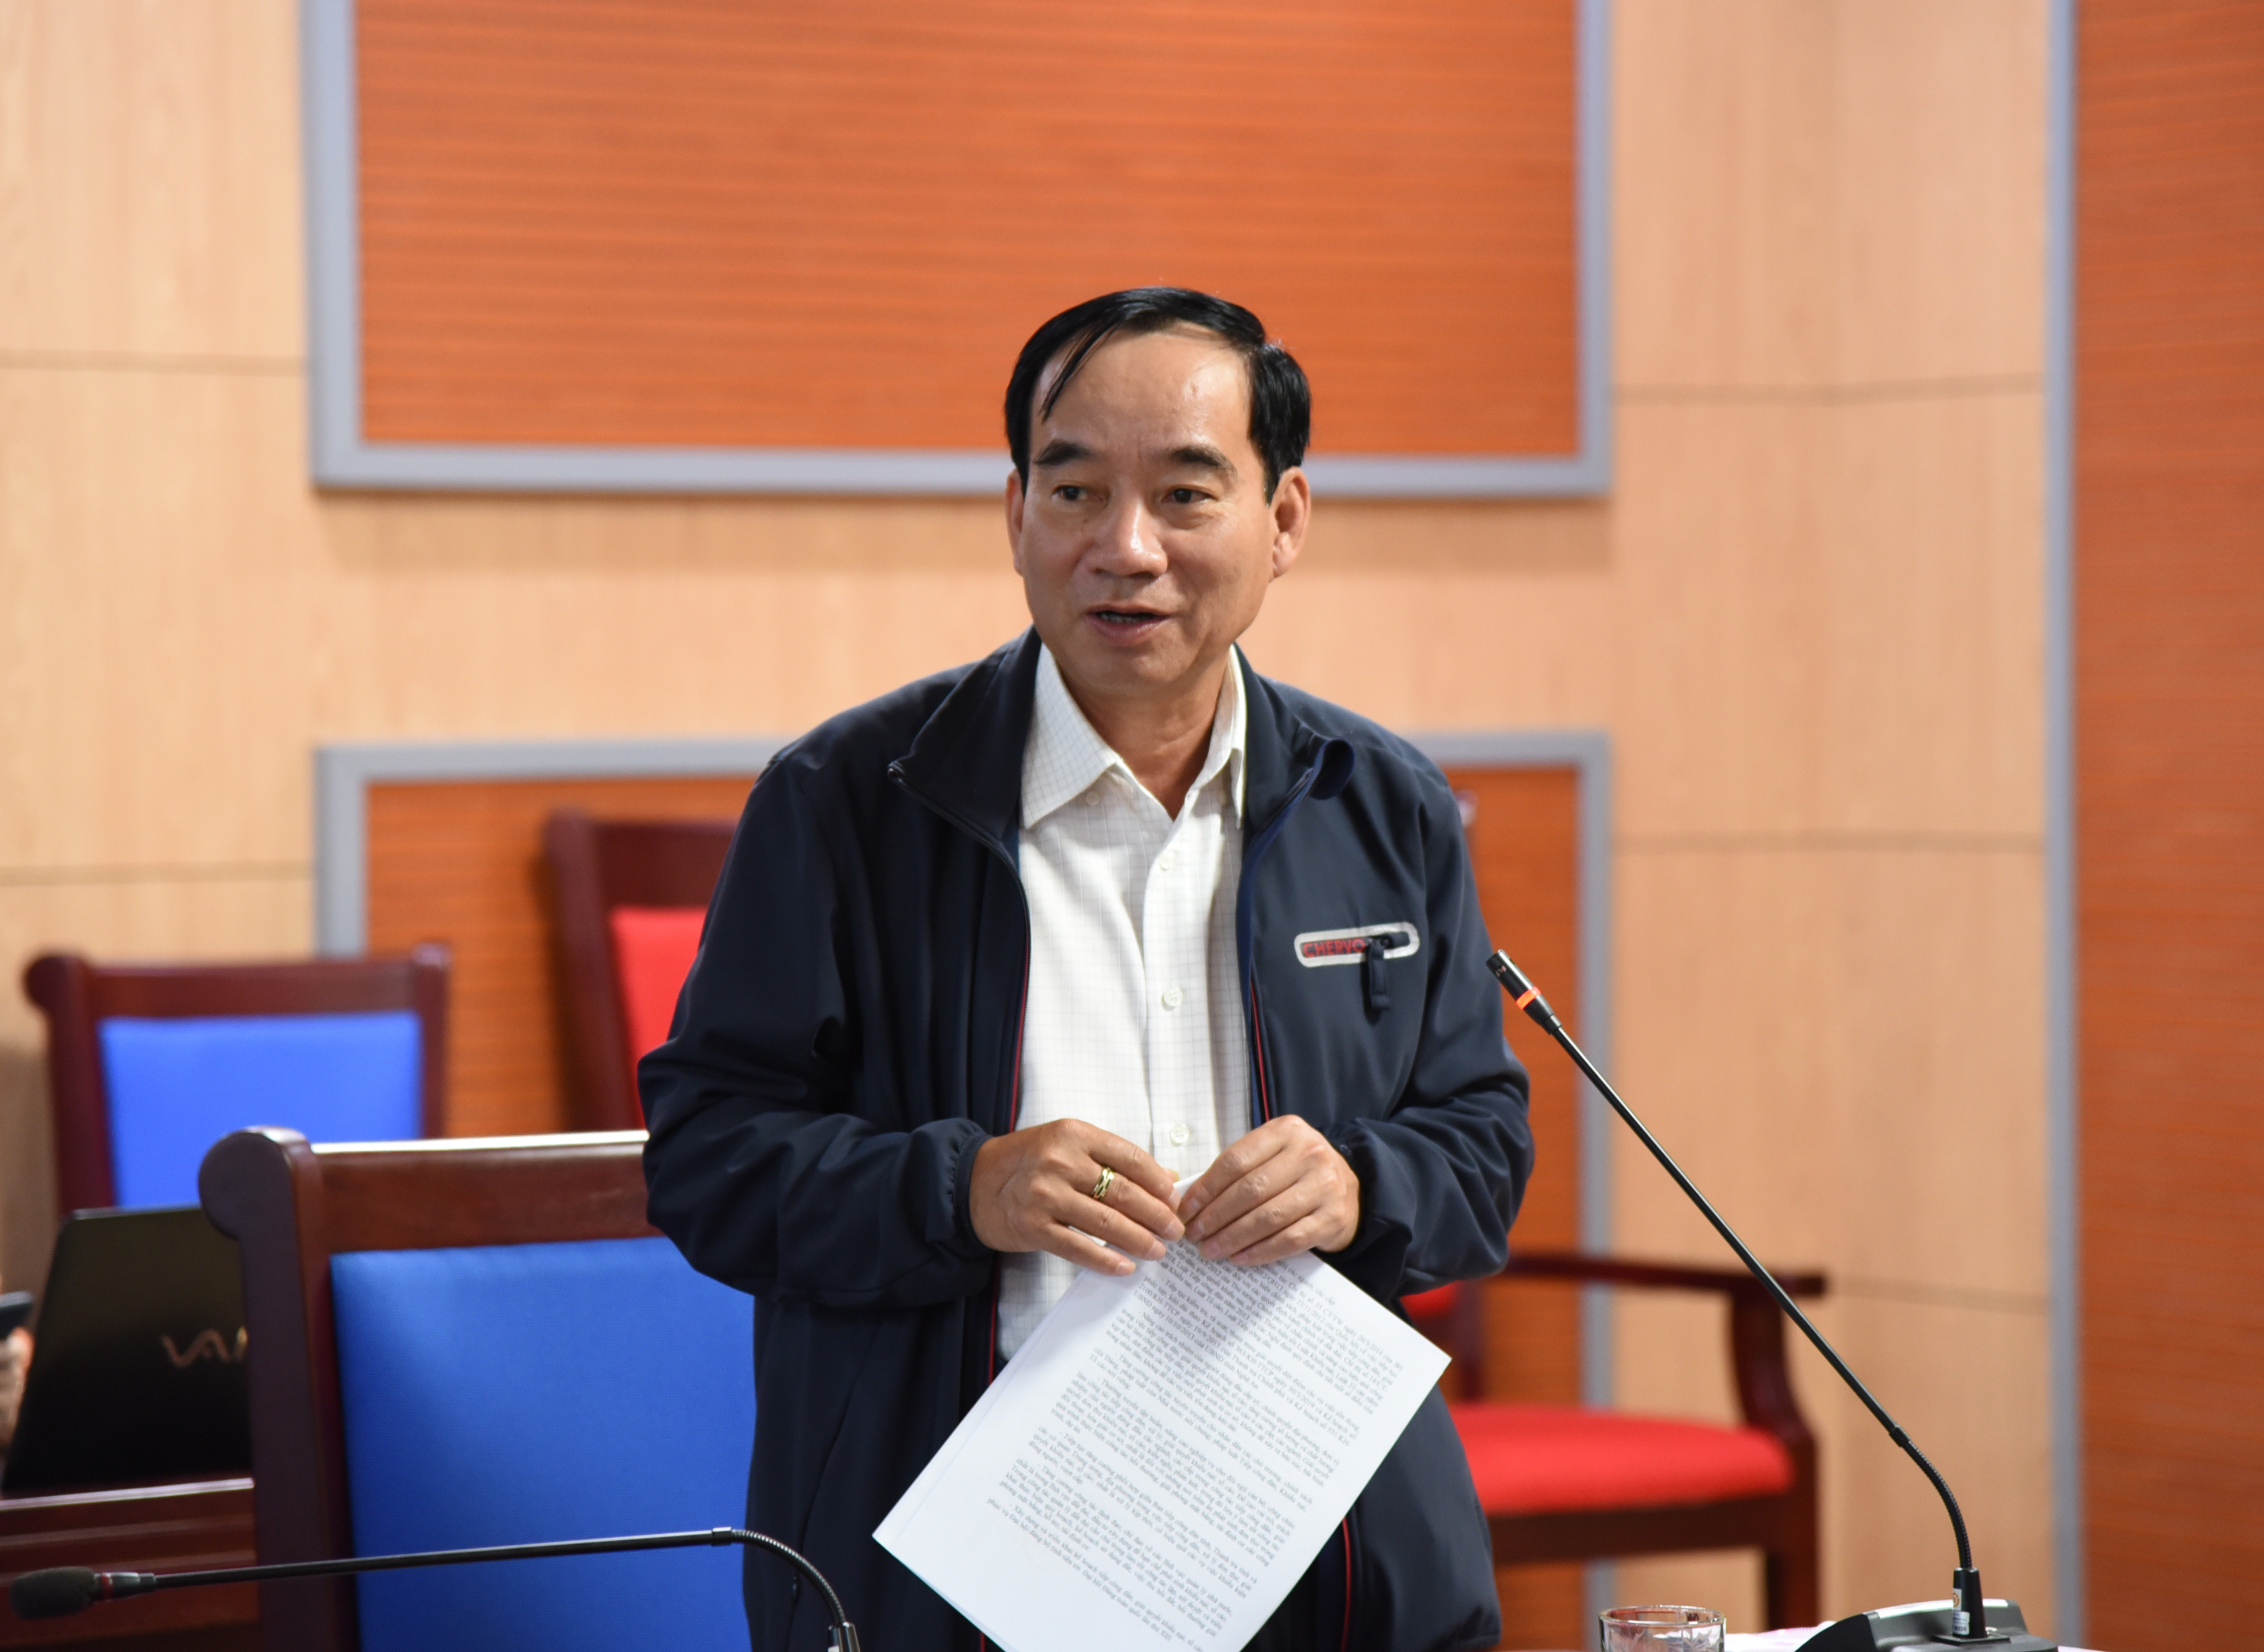 Phó Chủ tịch HĐND tỉnh Hoàng Viết Đường ghi nhận những tiến bộ trong công tác tiếp dân, trách nhiệm tiếp dân của cấp ủy, chính quyền các cấp. Ảnh: Thu Giang